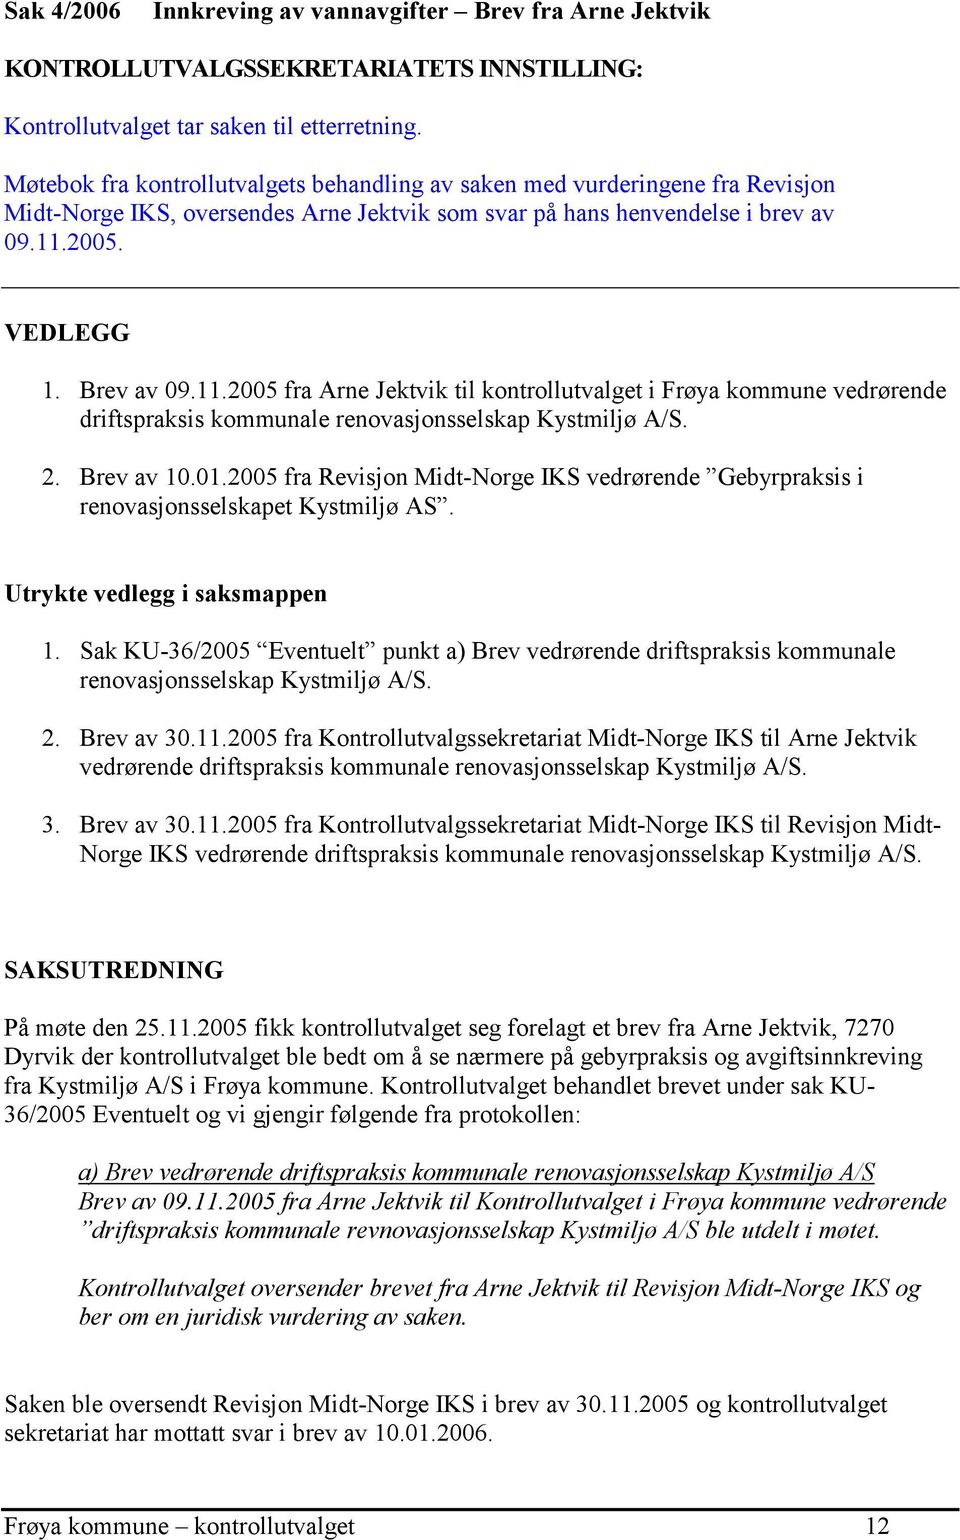 2005. VEDLEGG 1. Brev av 09.11.2005 fra Arne Jektvik til kontrollutvalget i Frøya kommune vedrørende driftspraksis kommunale renovasjonsselskap Kystmiljø A/S. 2. Brev av 10.01.